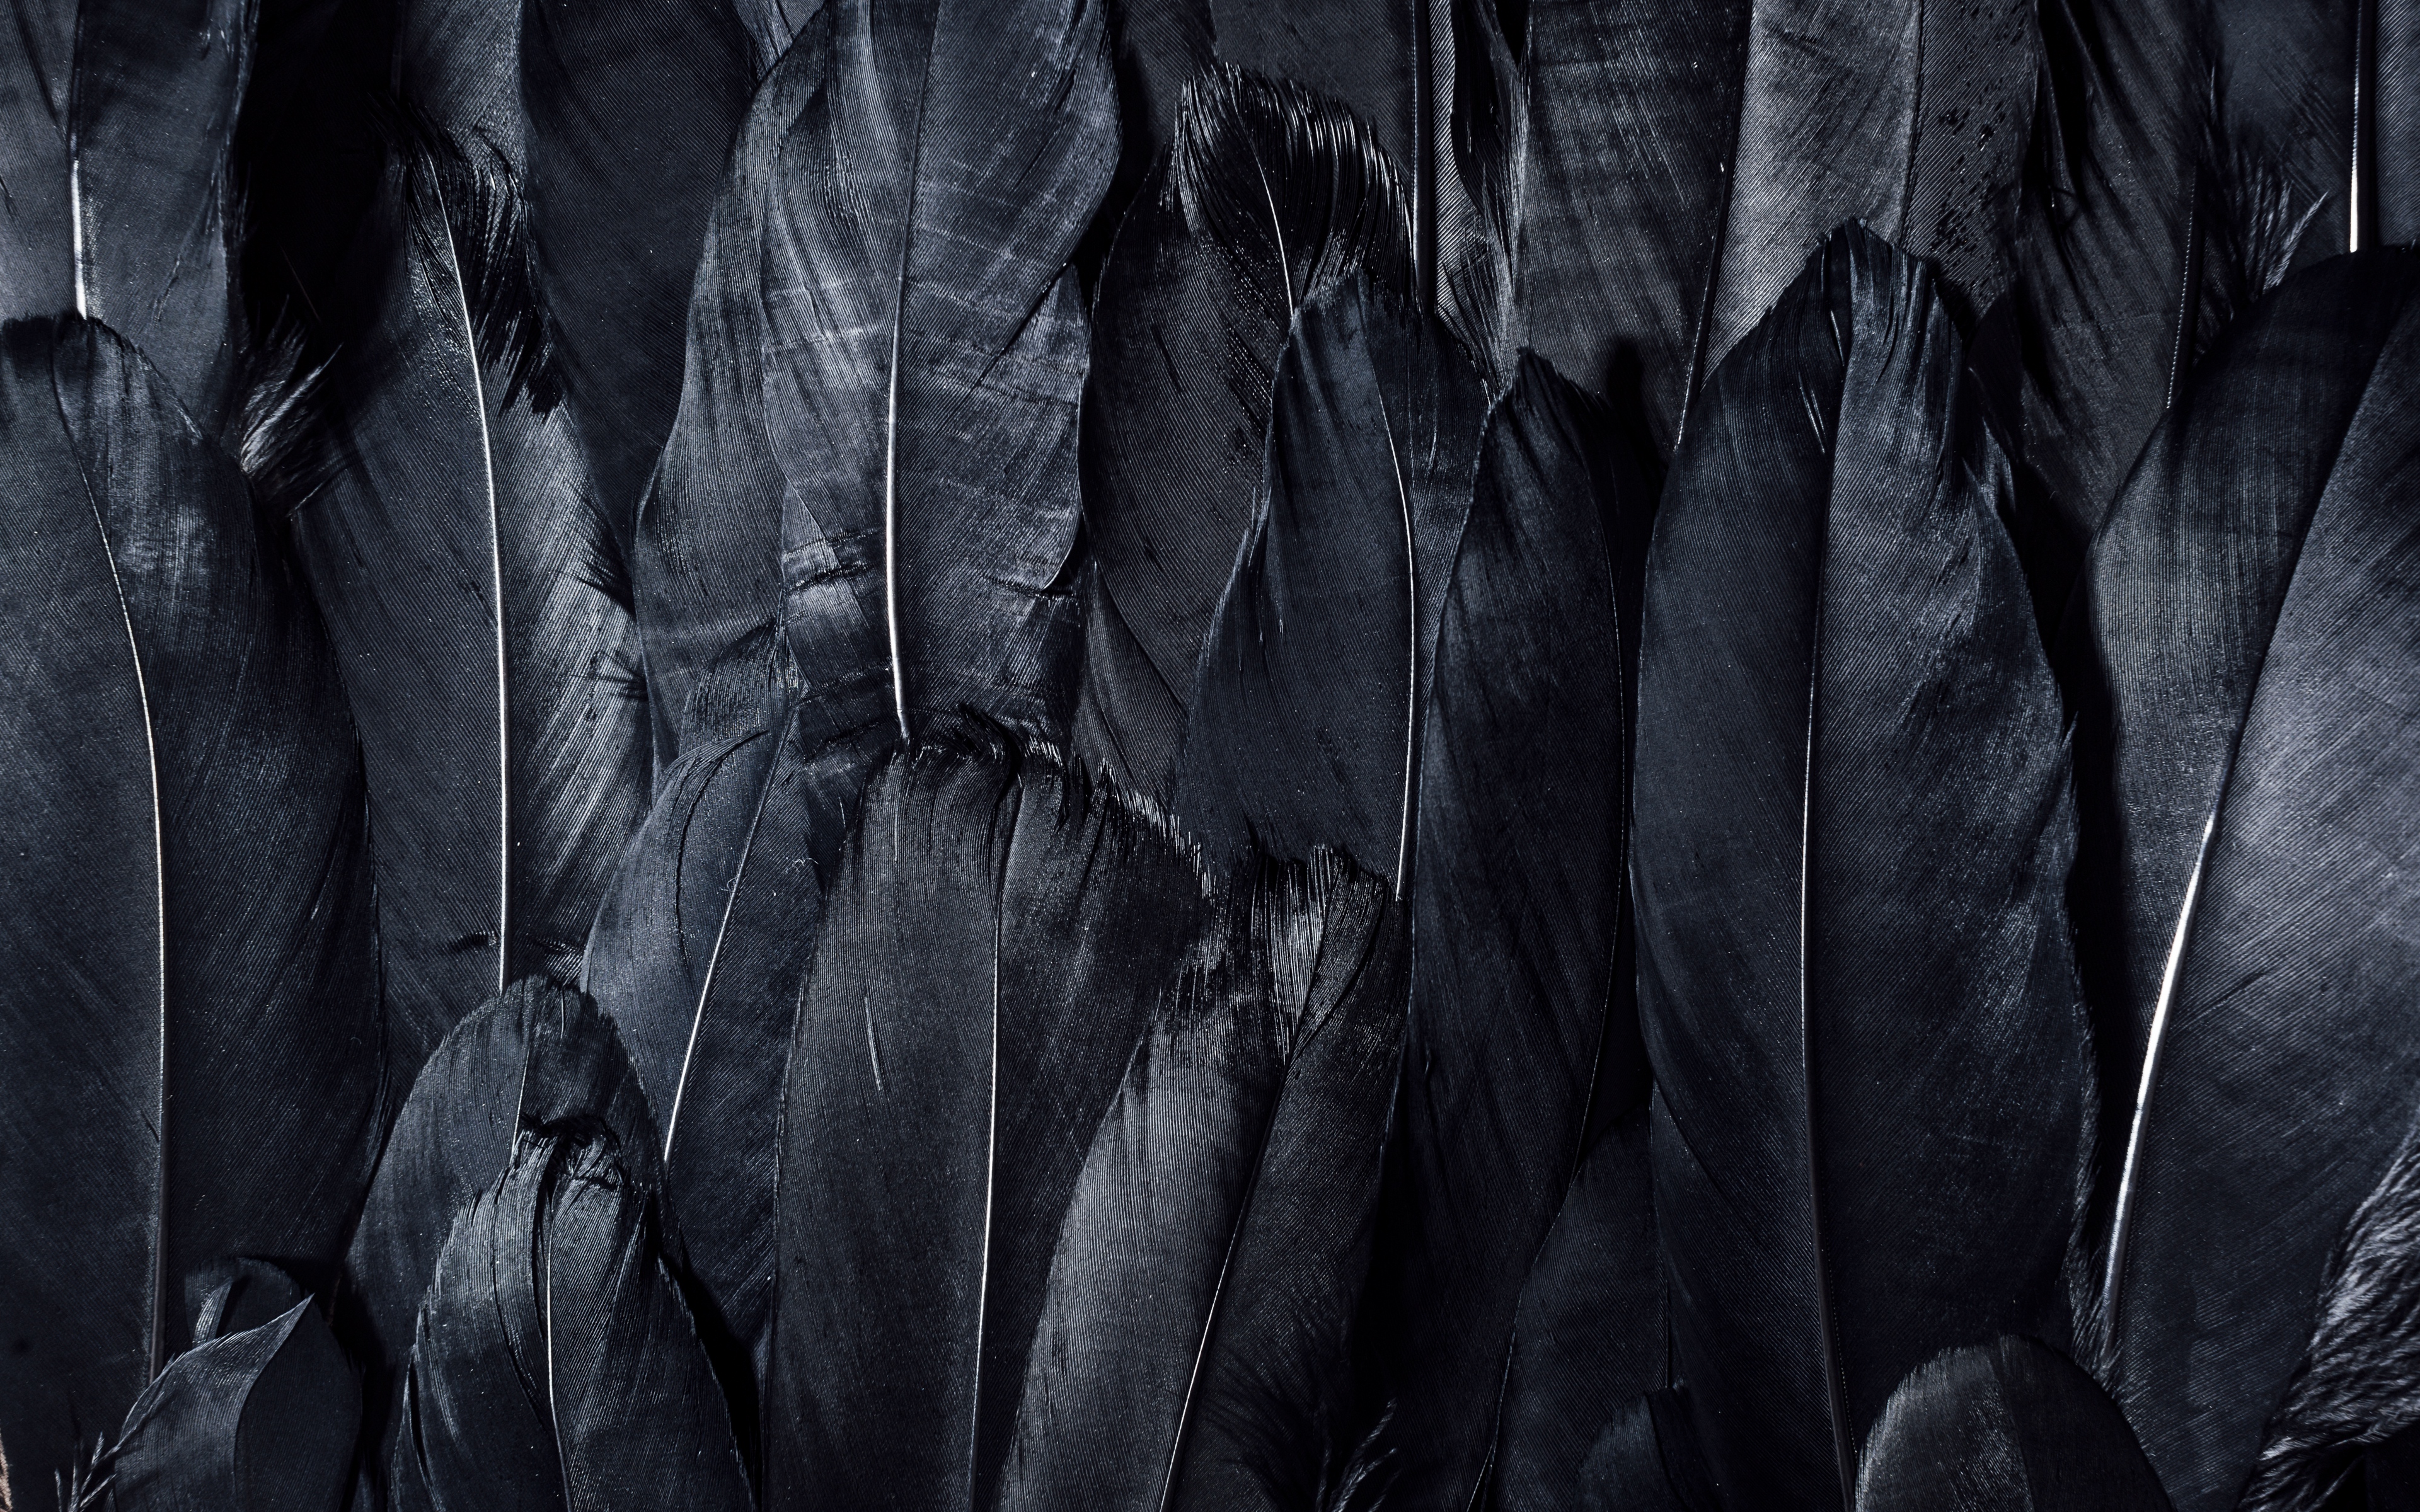 papel tapiz negro,negro,en blanco y negro,fotografía monocroma,oscuridad,árbol